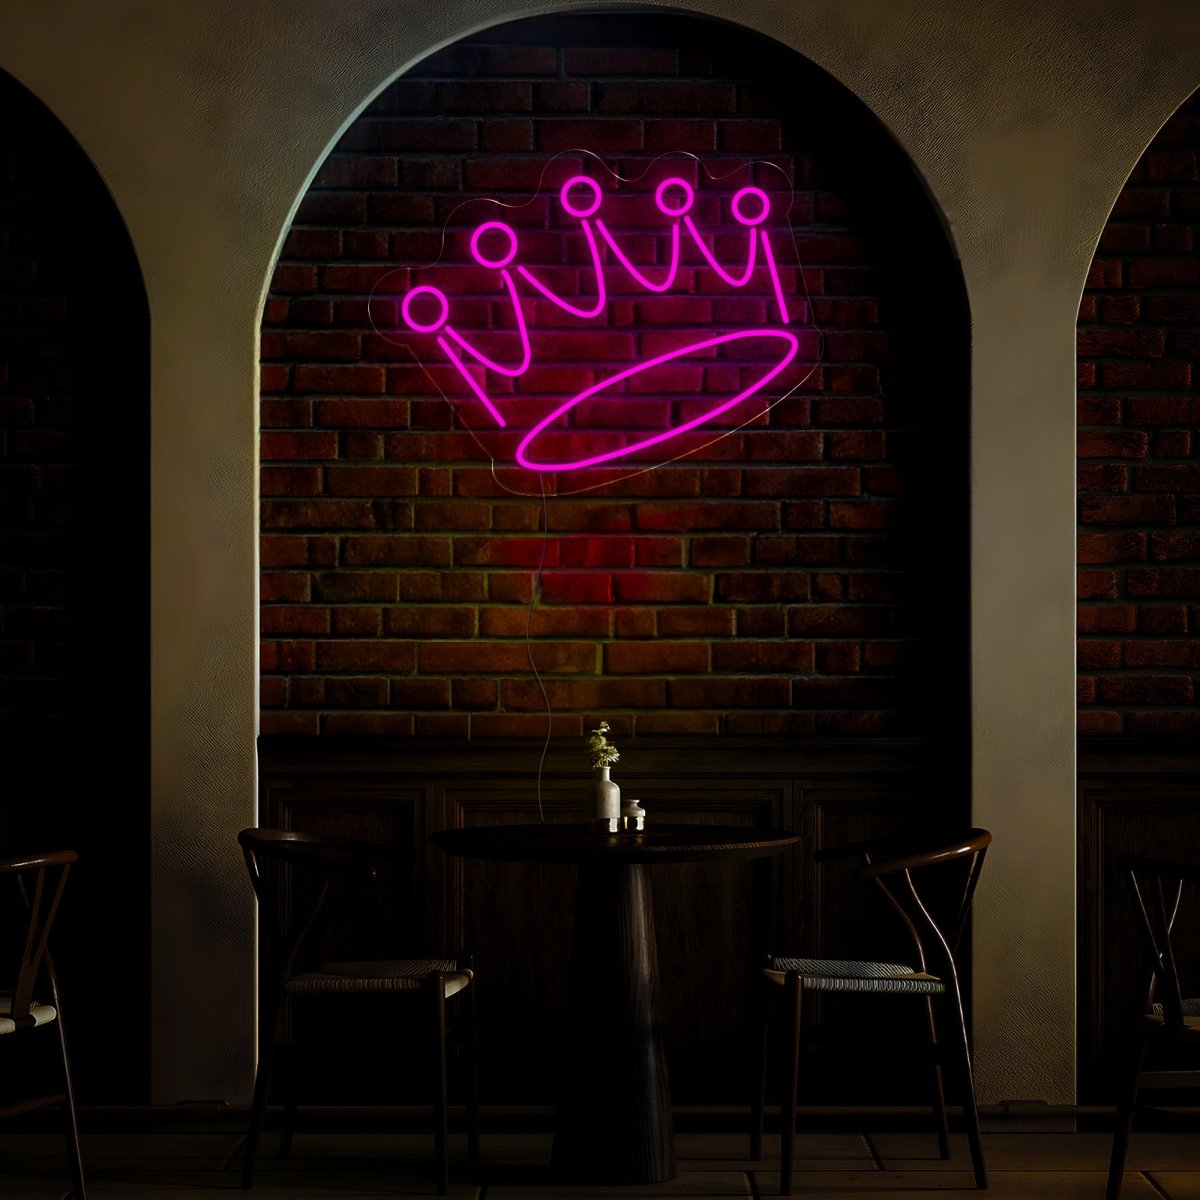 Crown Led Neon Sign - Reels Custom